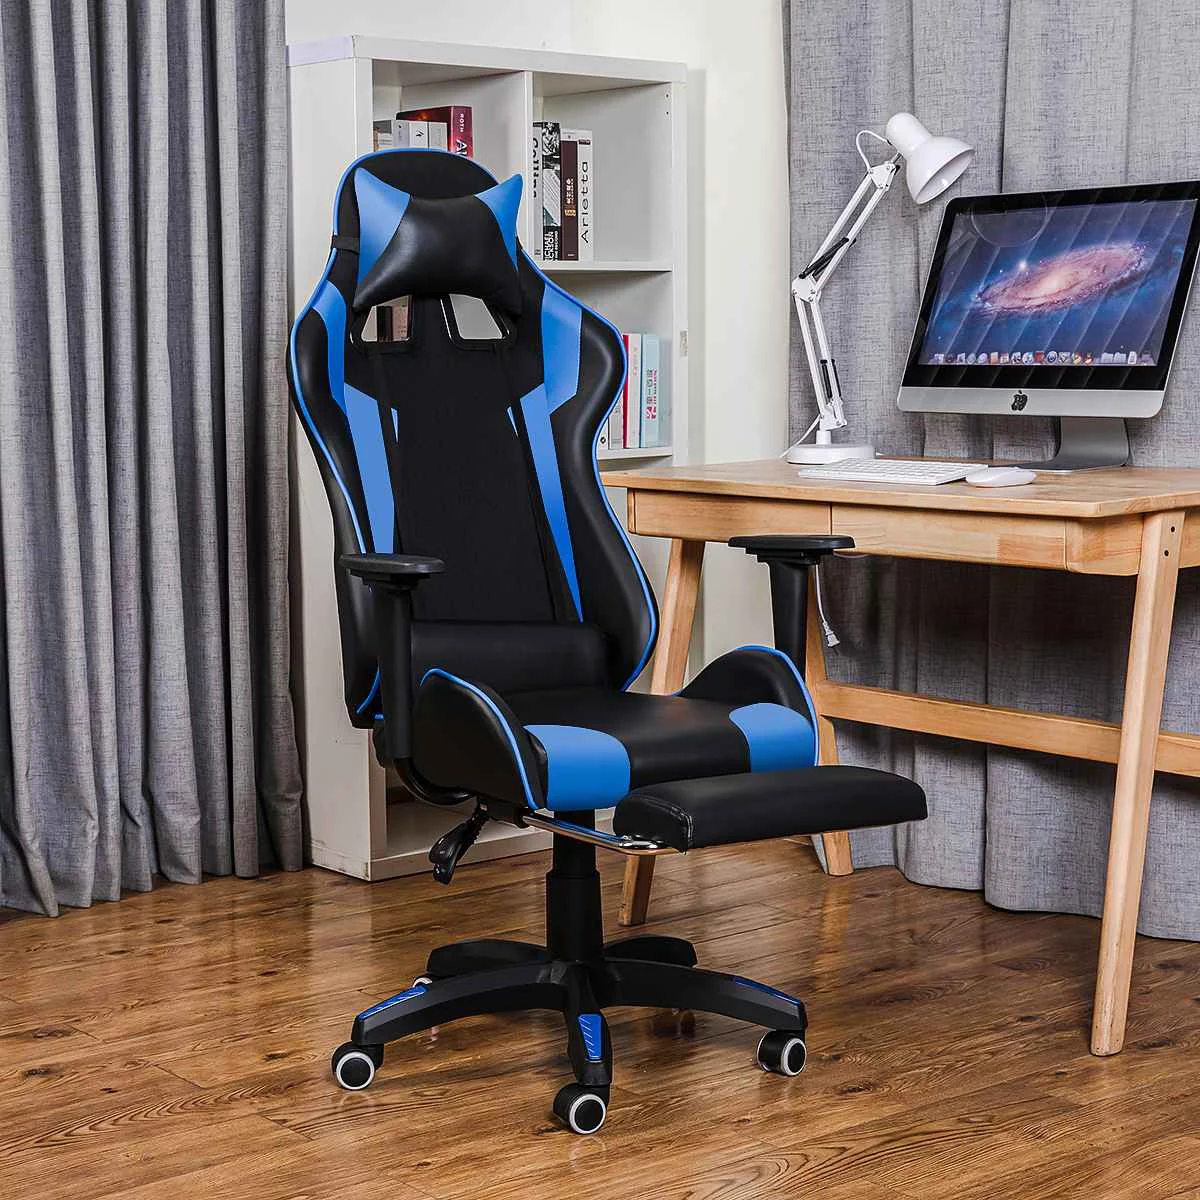 

Игровой ноутбук для дома и офиса стулья 155 градусов откидной компьютерное кресло удобные посадочные места Racer кресло из искусственной кожи ...